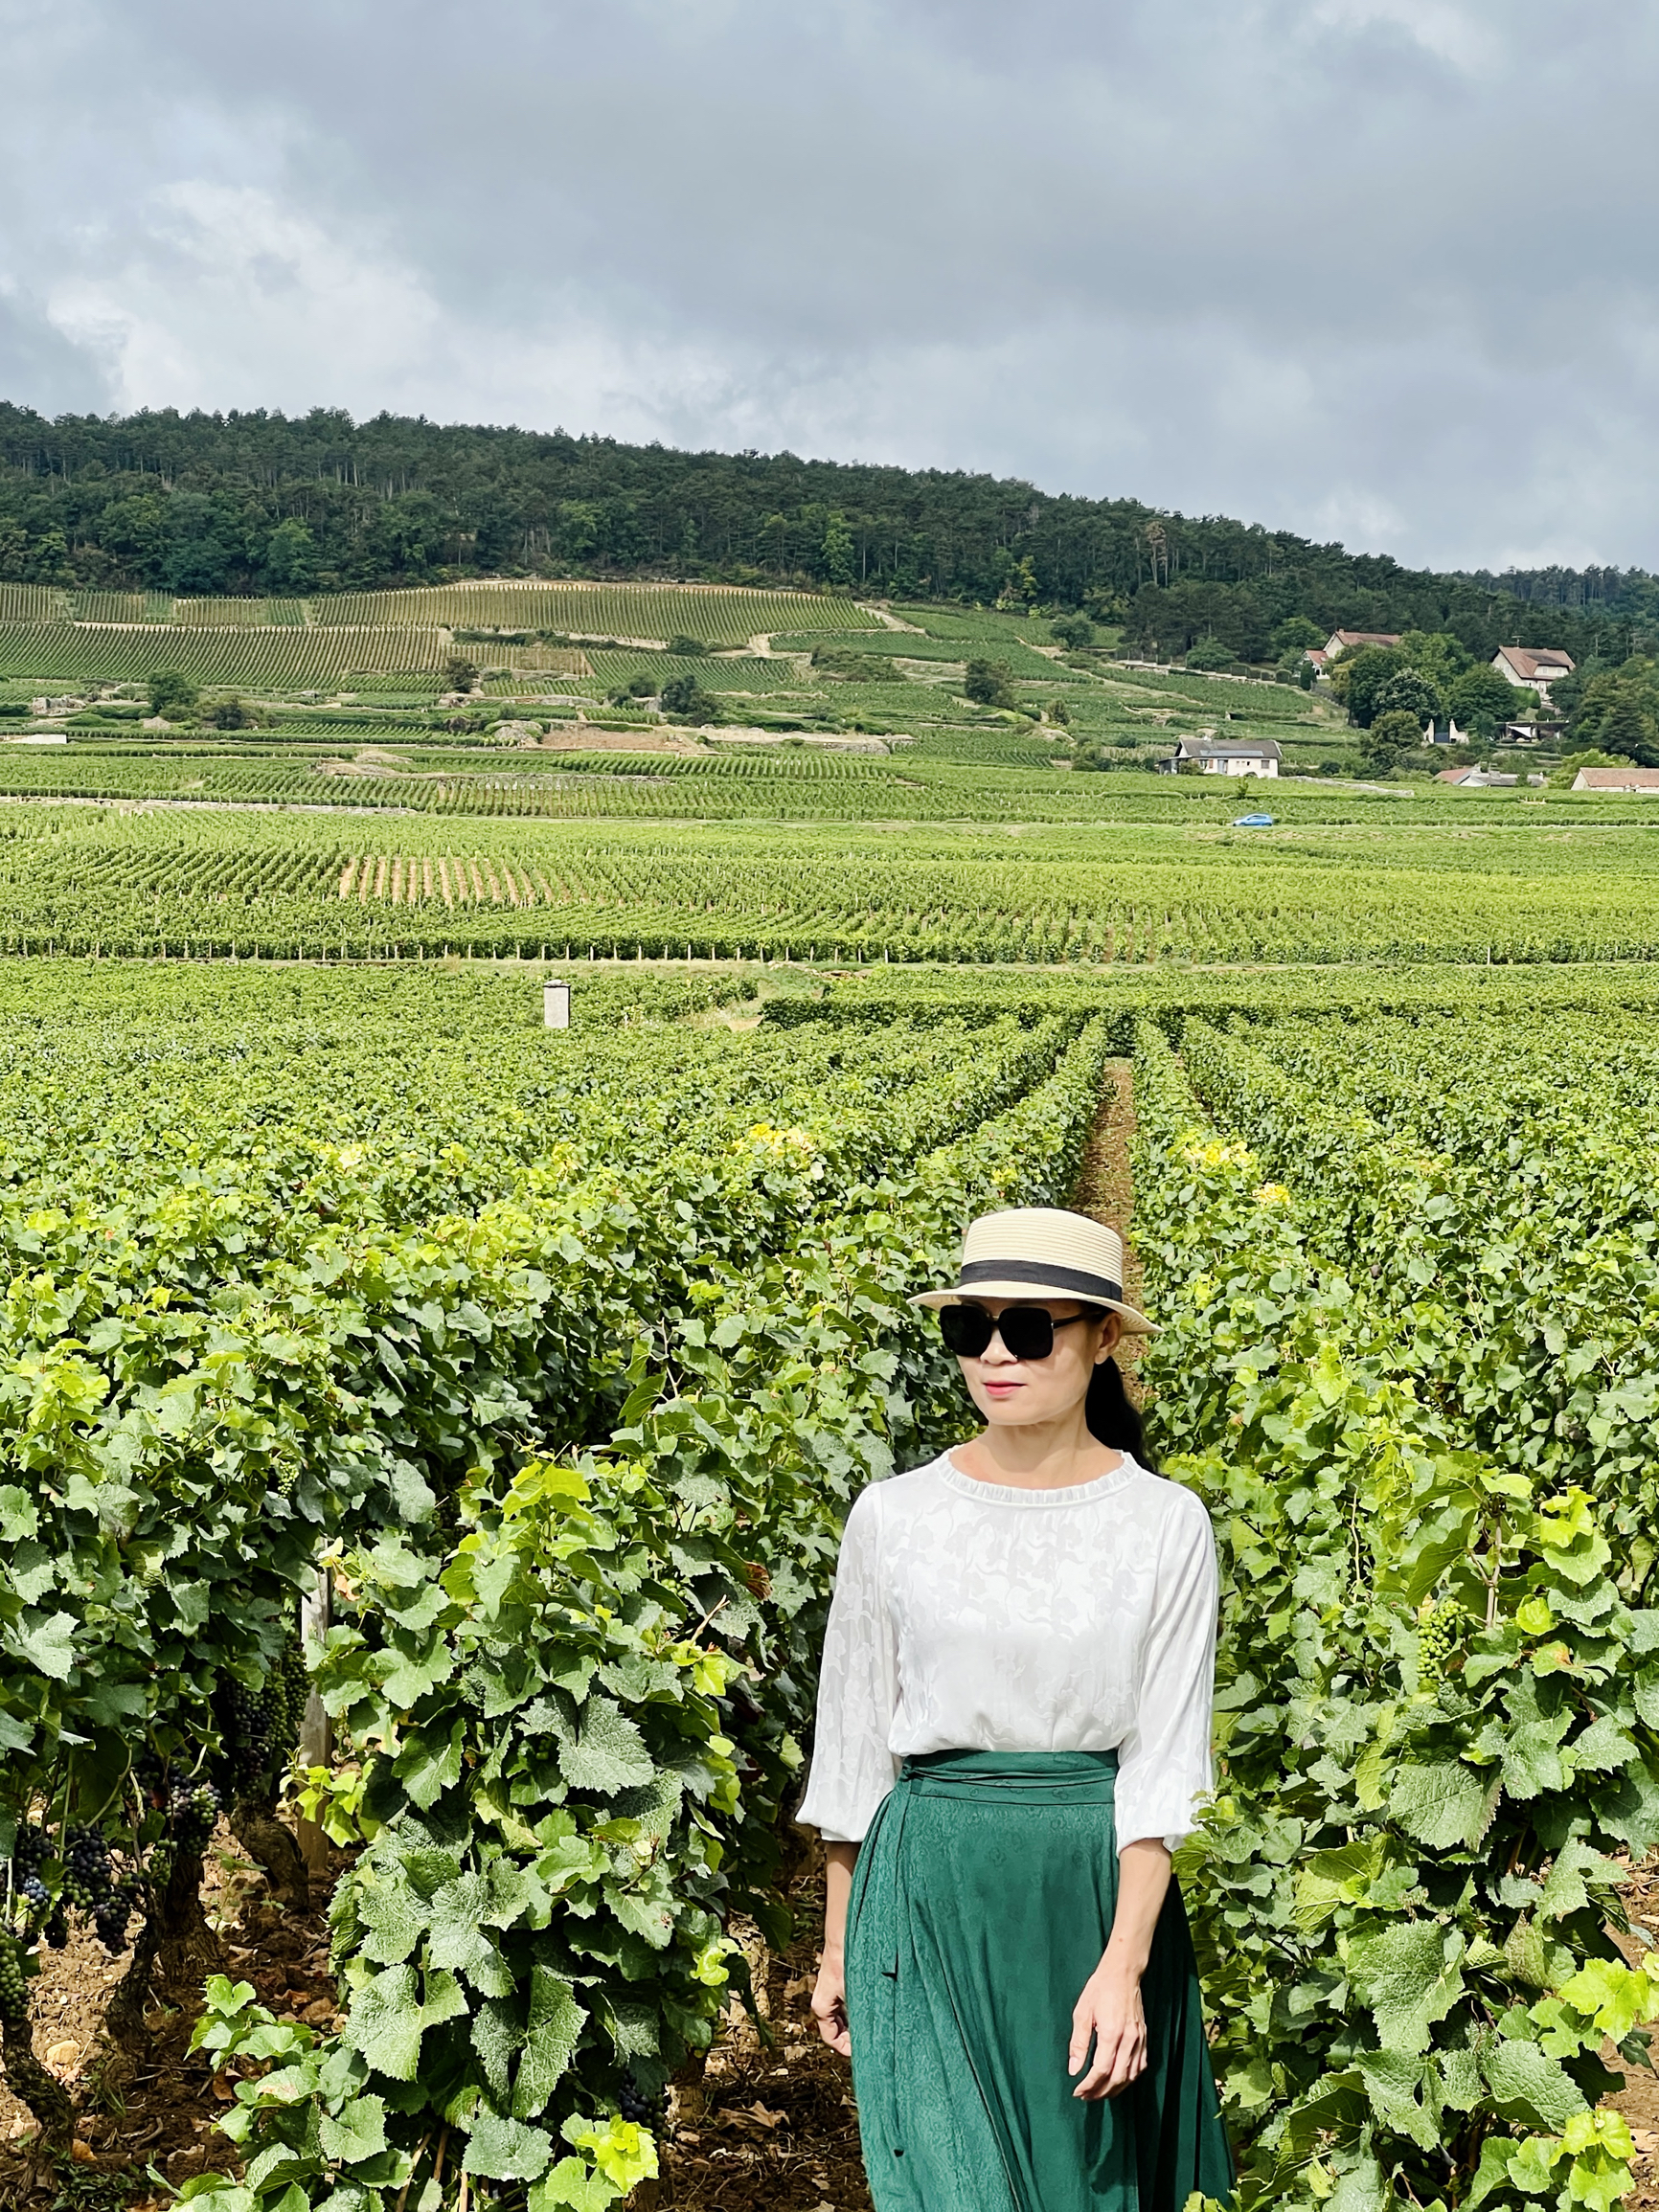 法国最美自驾线路之一勃艮第顶级葡萄美酒之路